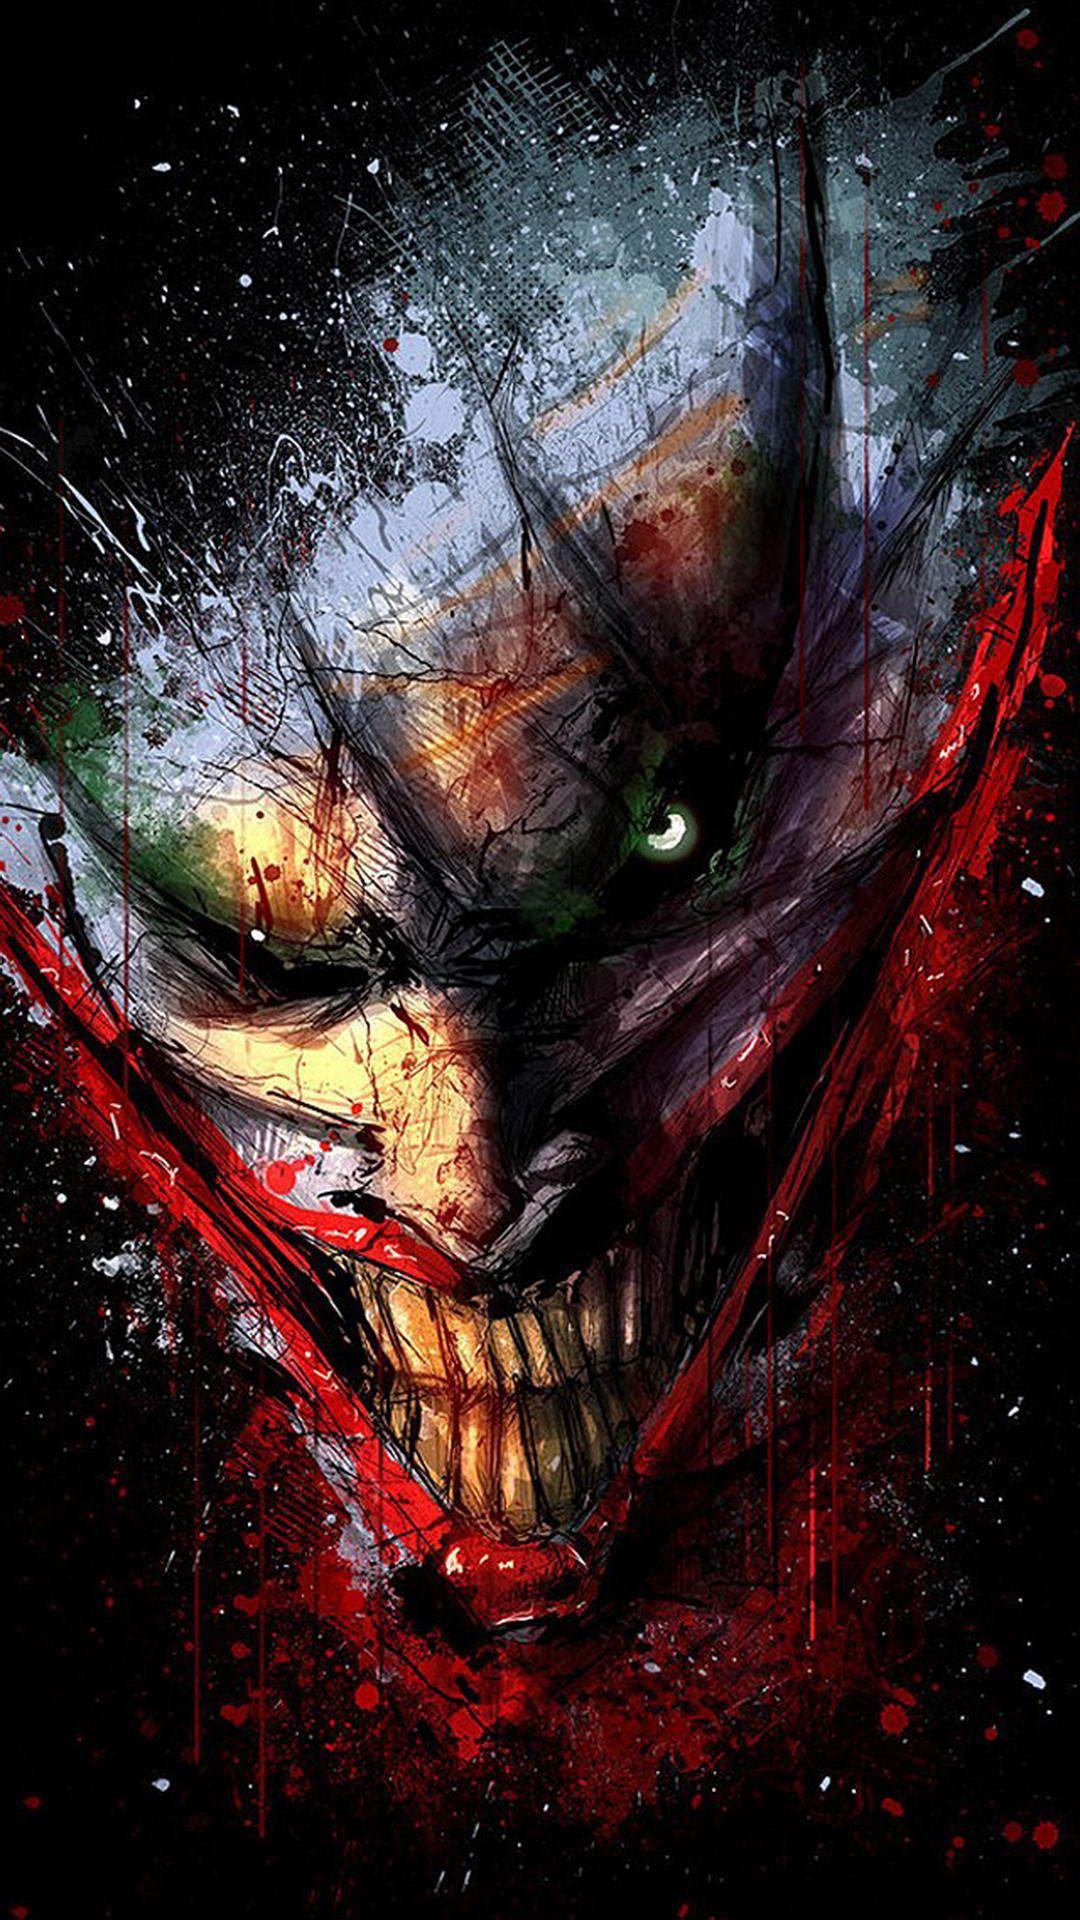 Cool Joker Wallpaper for iPhones